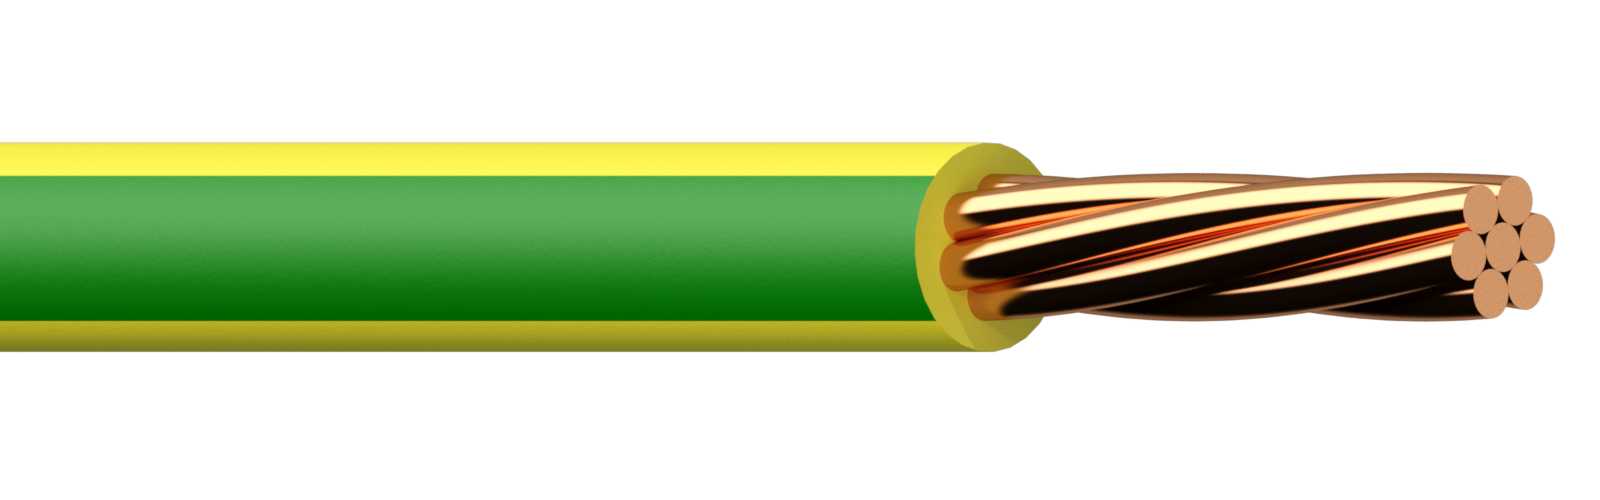 Draka - PN 2.5 mm² FTR Gul/Grønn